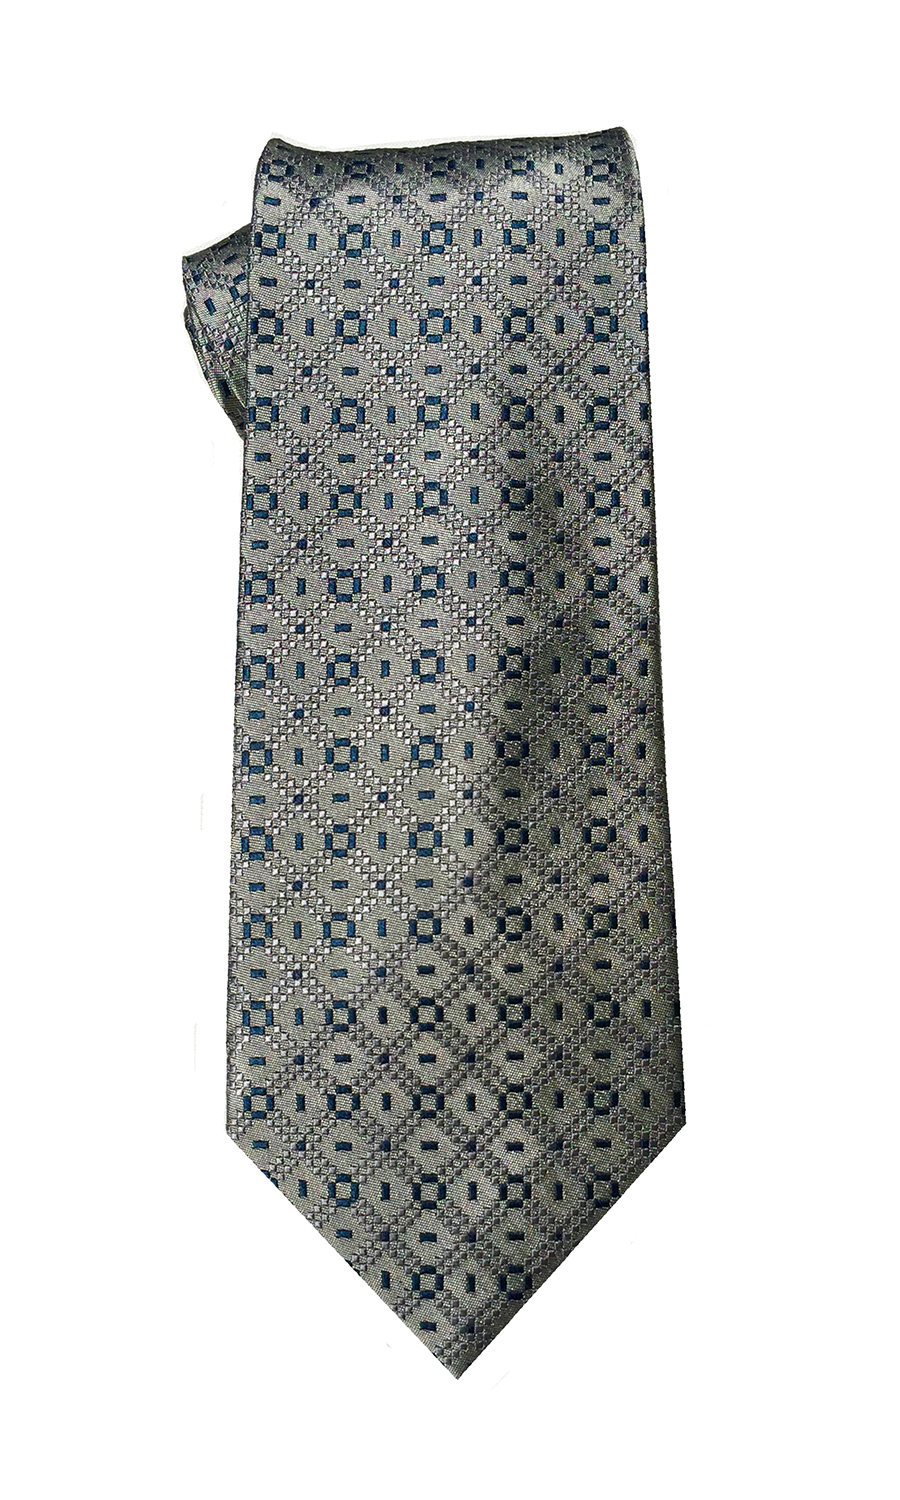 Delta Tango tie in light grey and navy